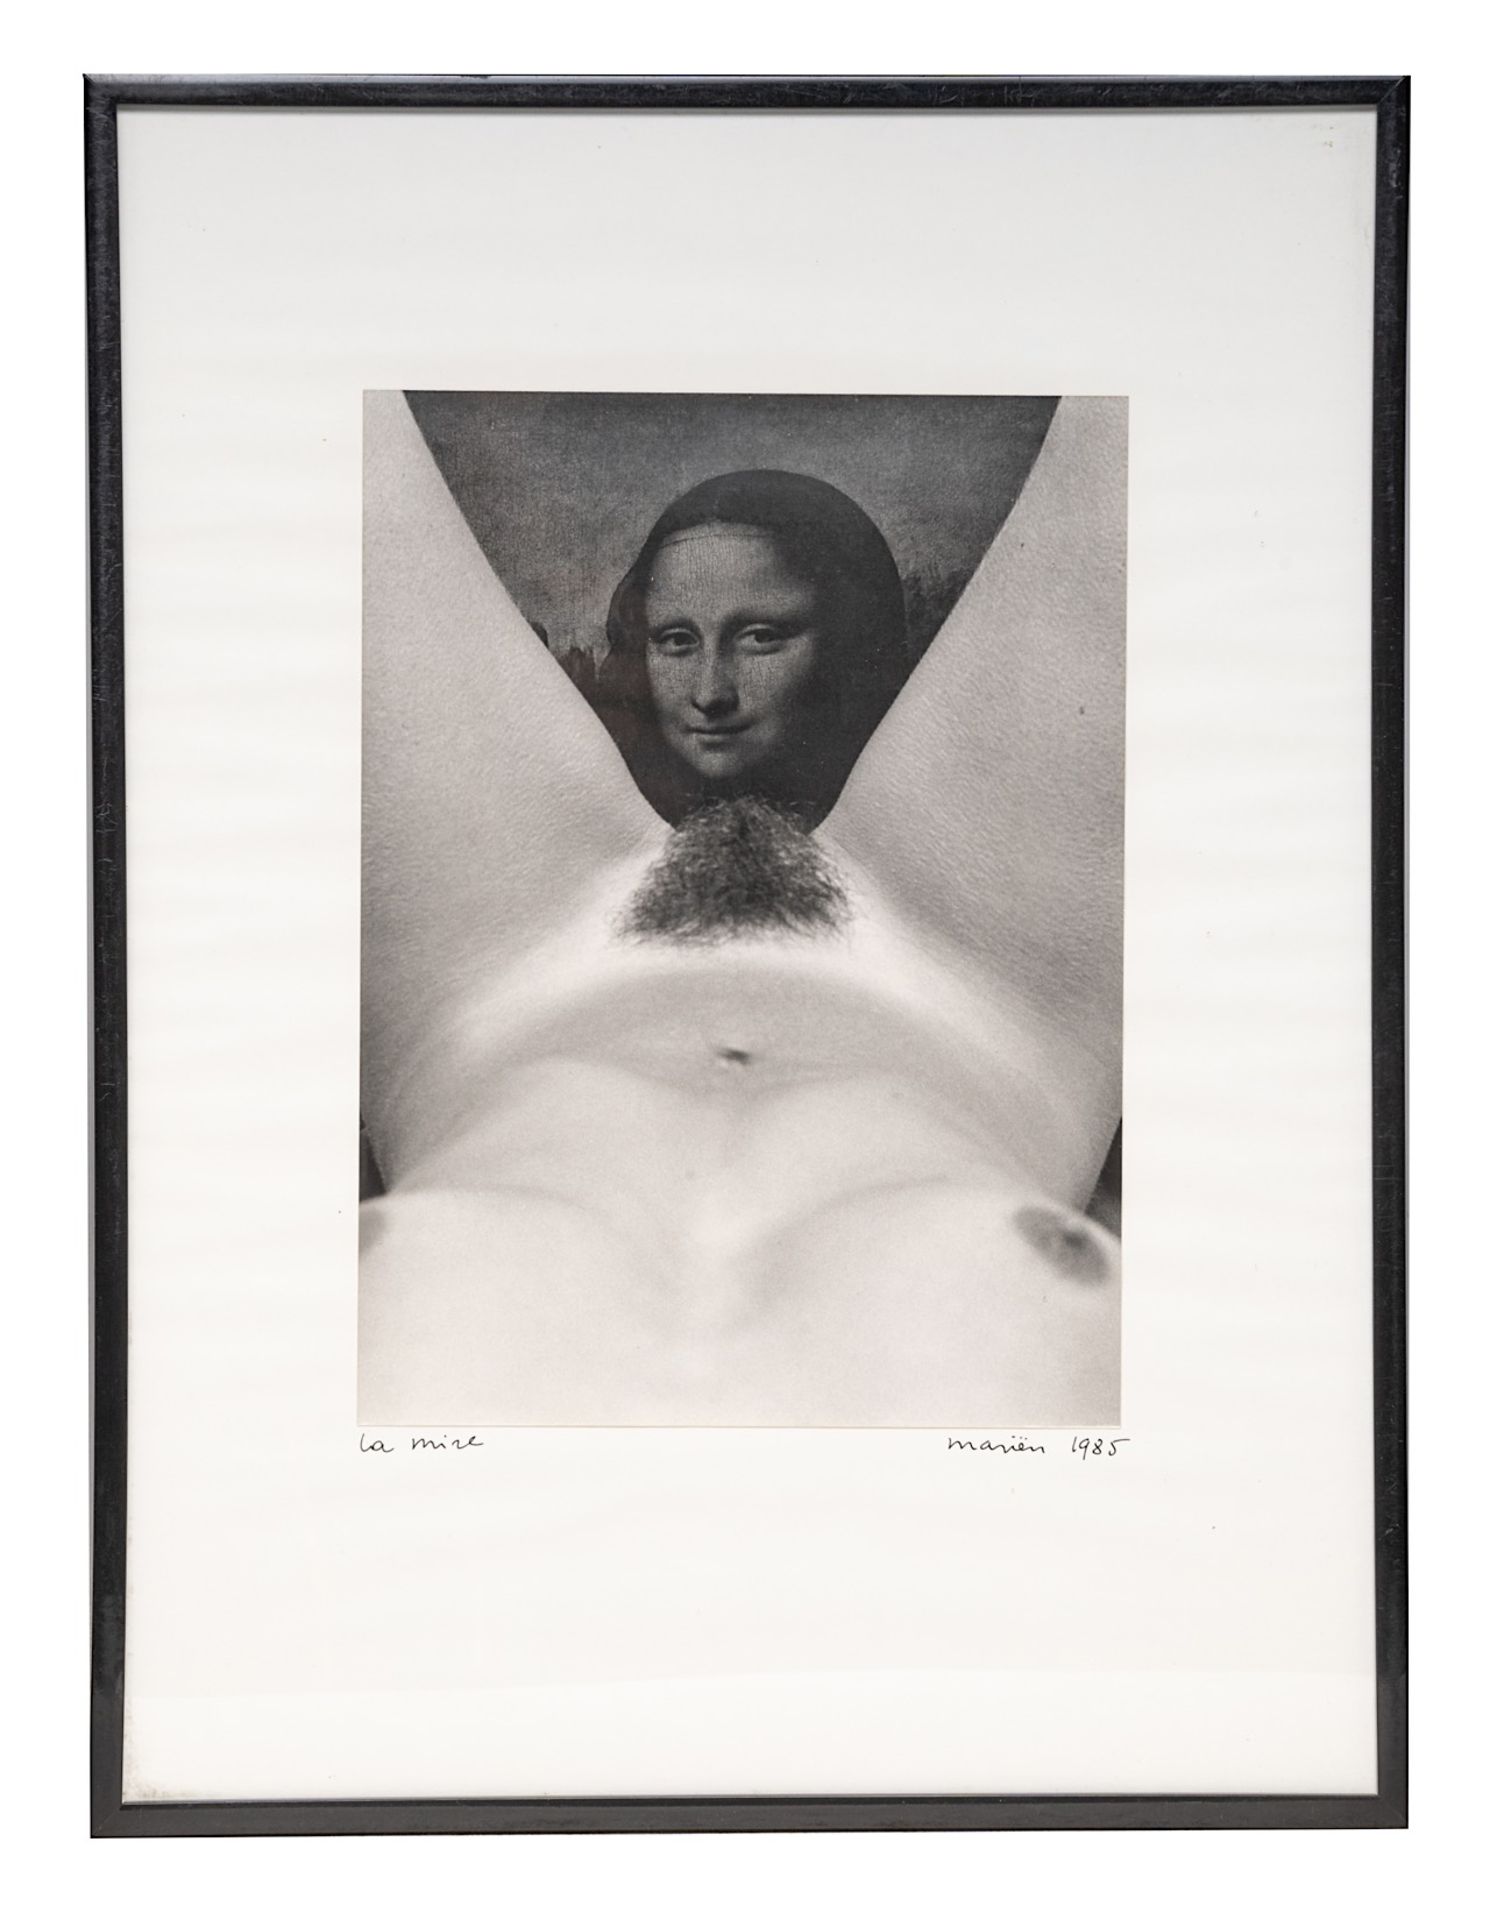 Marcel Marien (1920-1993), 'La Mire', 1985, gelatine silver print 24 x 18 cm. (9.4 x 7.0 in.), Frame - Bild 2 aus 4